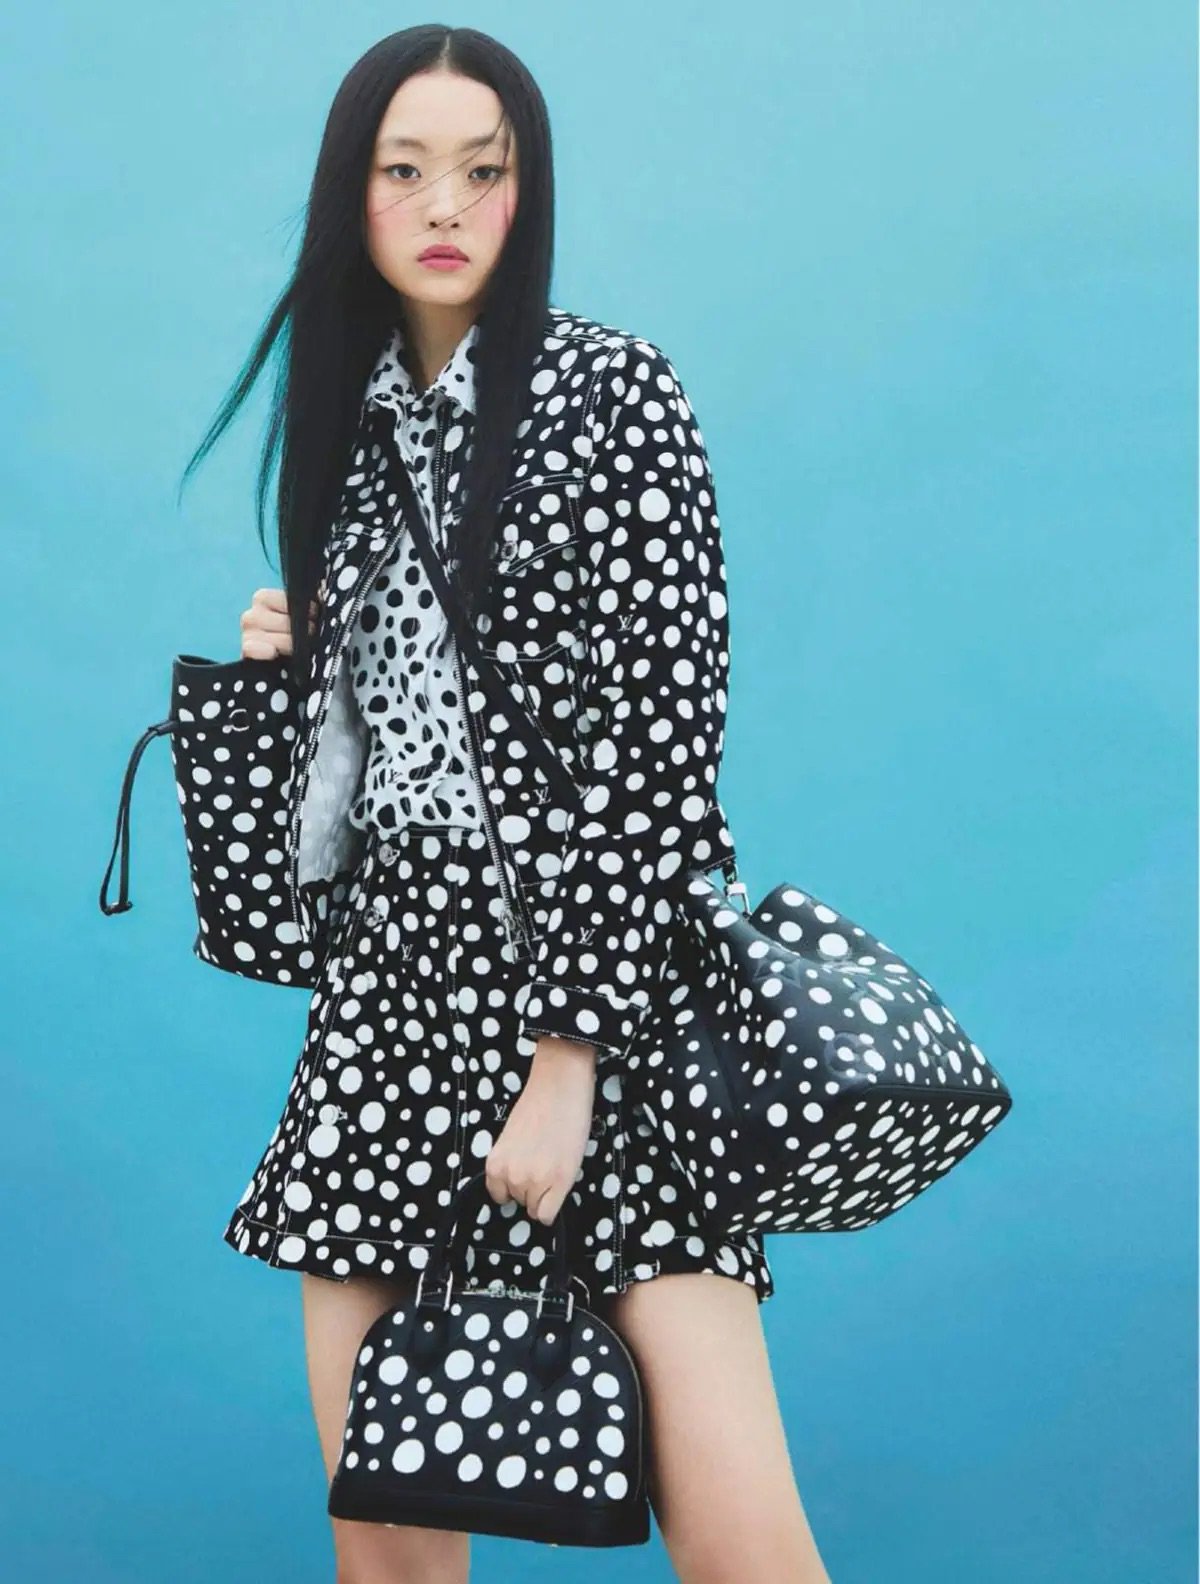 Louis Vuitton x Yayoi Kusama is Here + Other Fashion News - FASHION Magazine